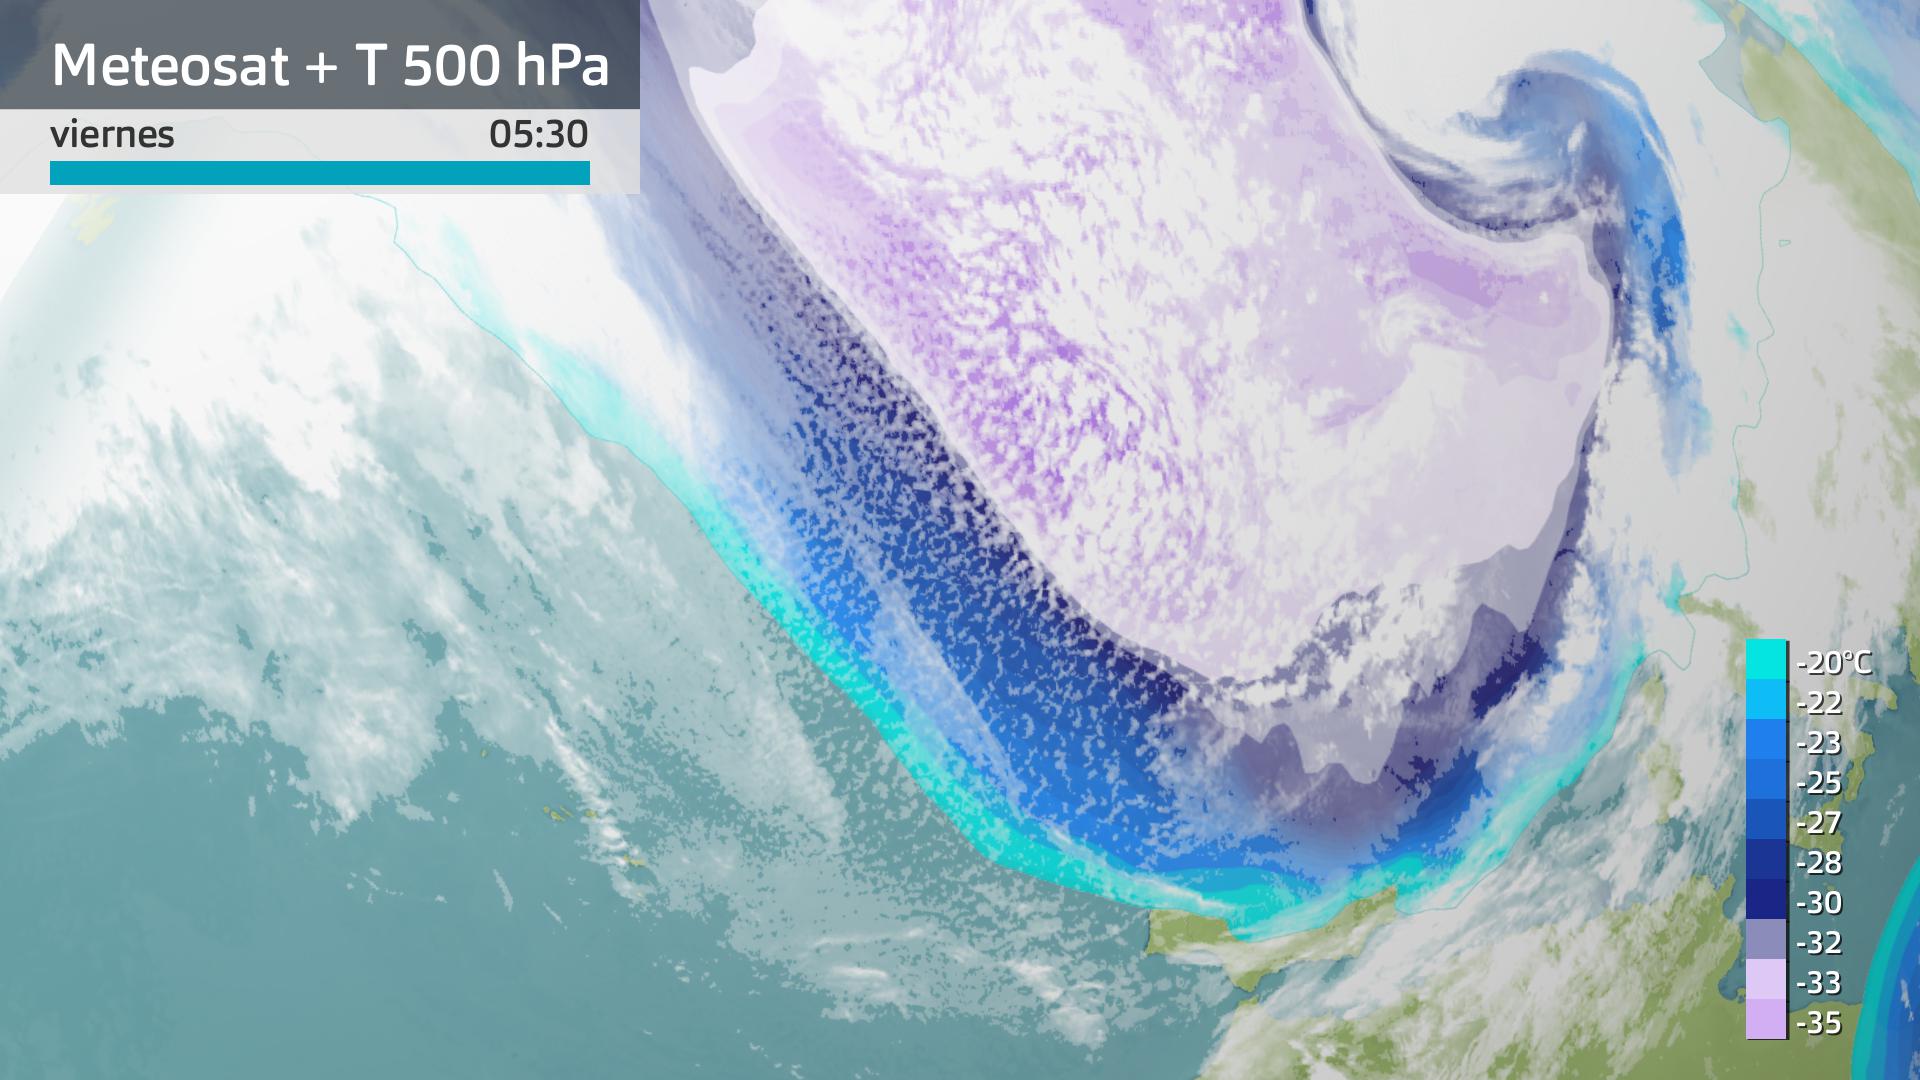 Imagen del Meteosat + temperatura a 500 hPa viernes 23 de febrero 5:30 h.